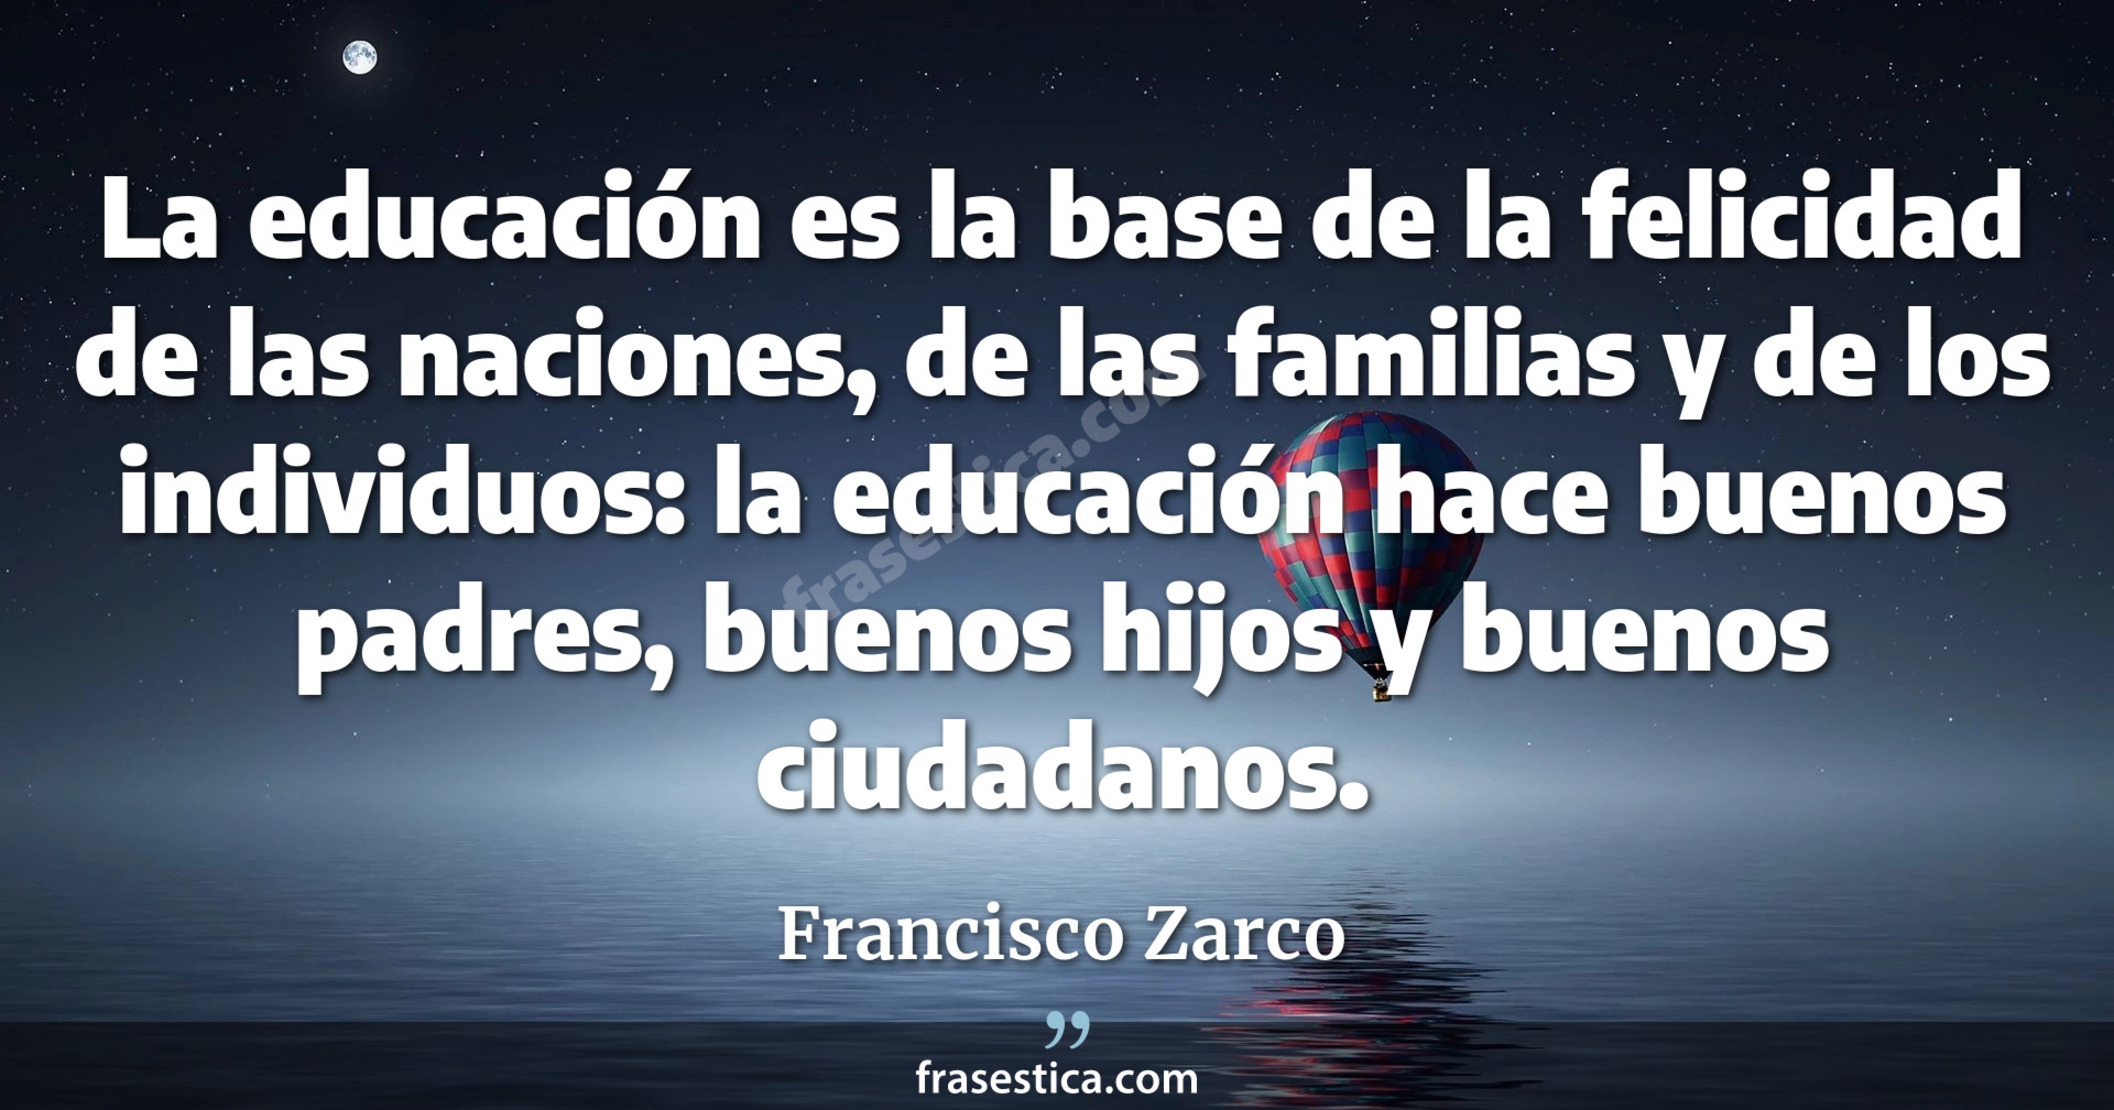 La educación es la base de la felicidad de las naciones, de las familias y de los individuos: la educación hace buenos padres, buenos hijos y buenos ciudadanos. - Francisco Zarco